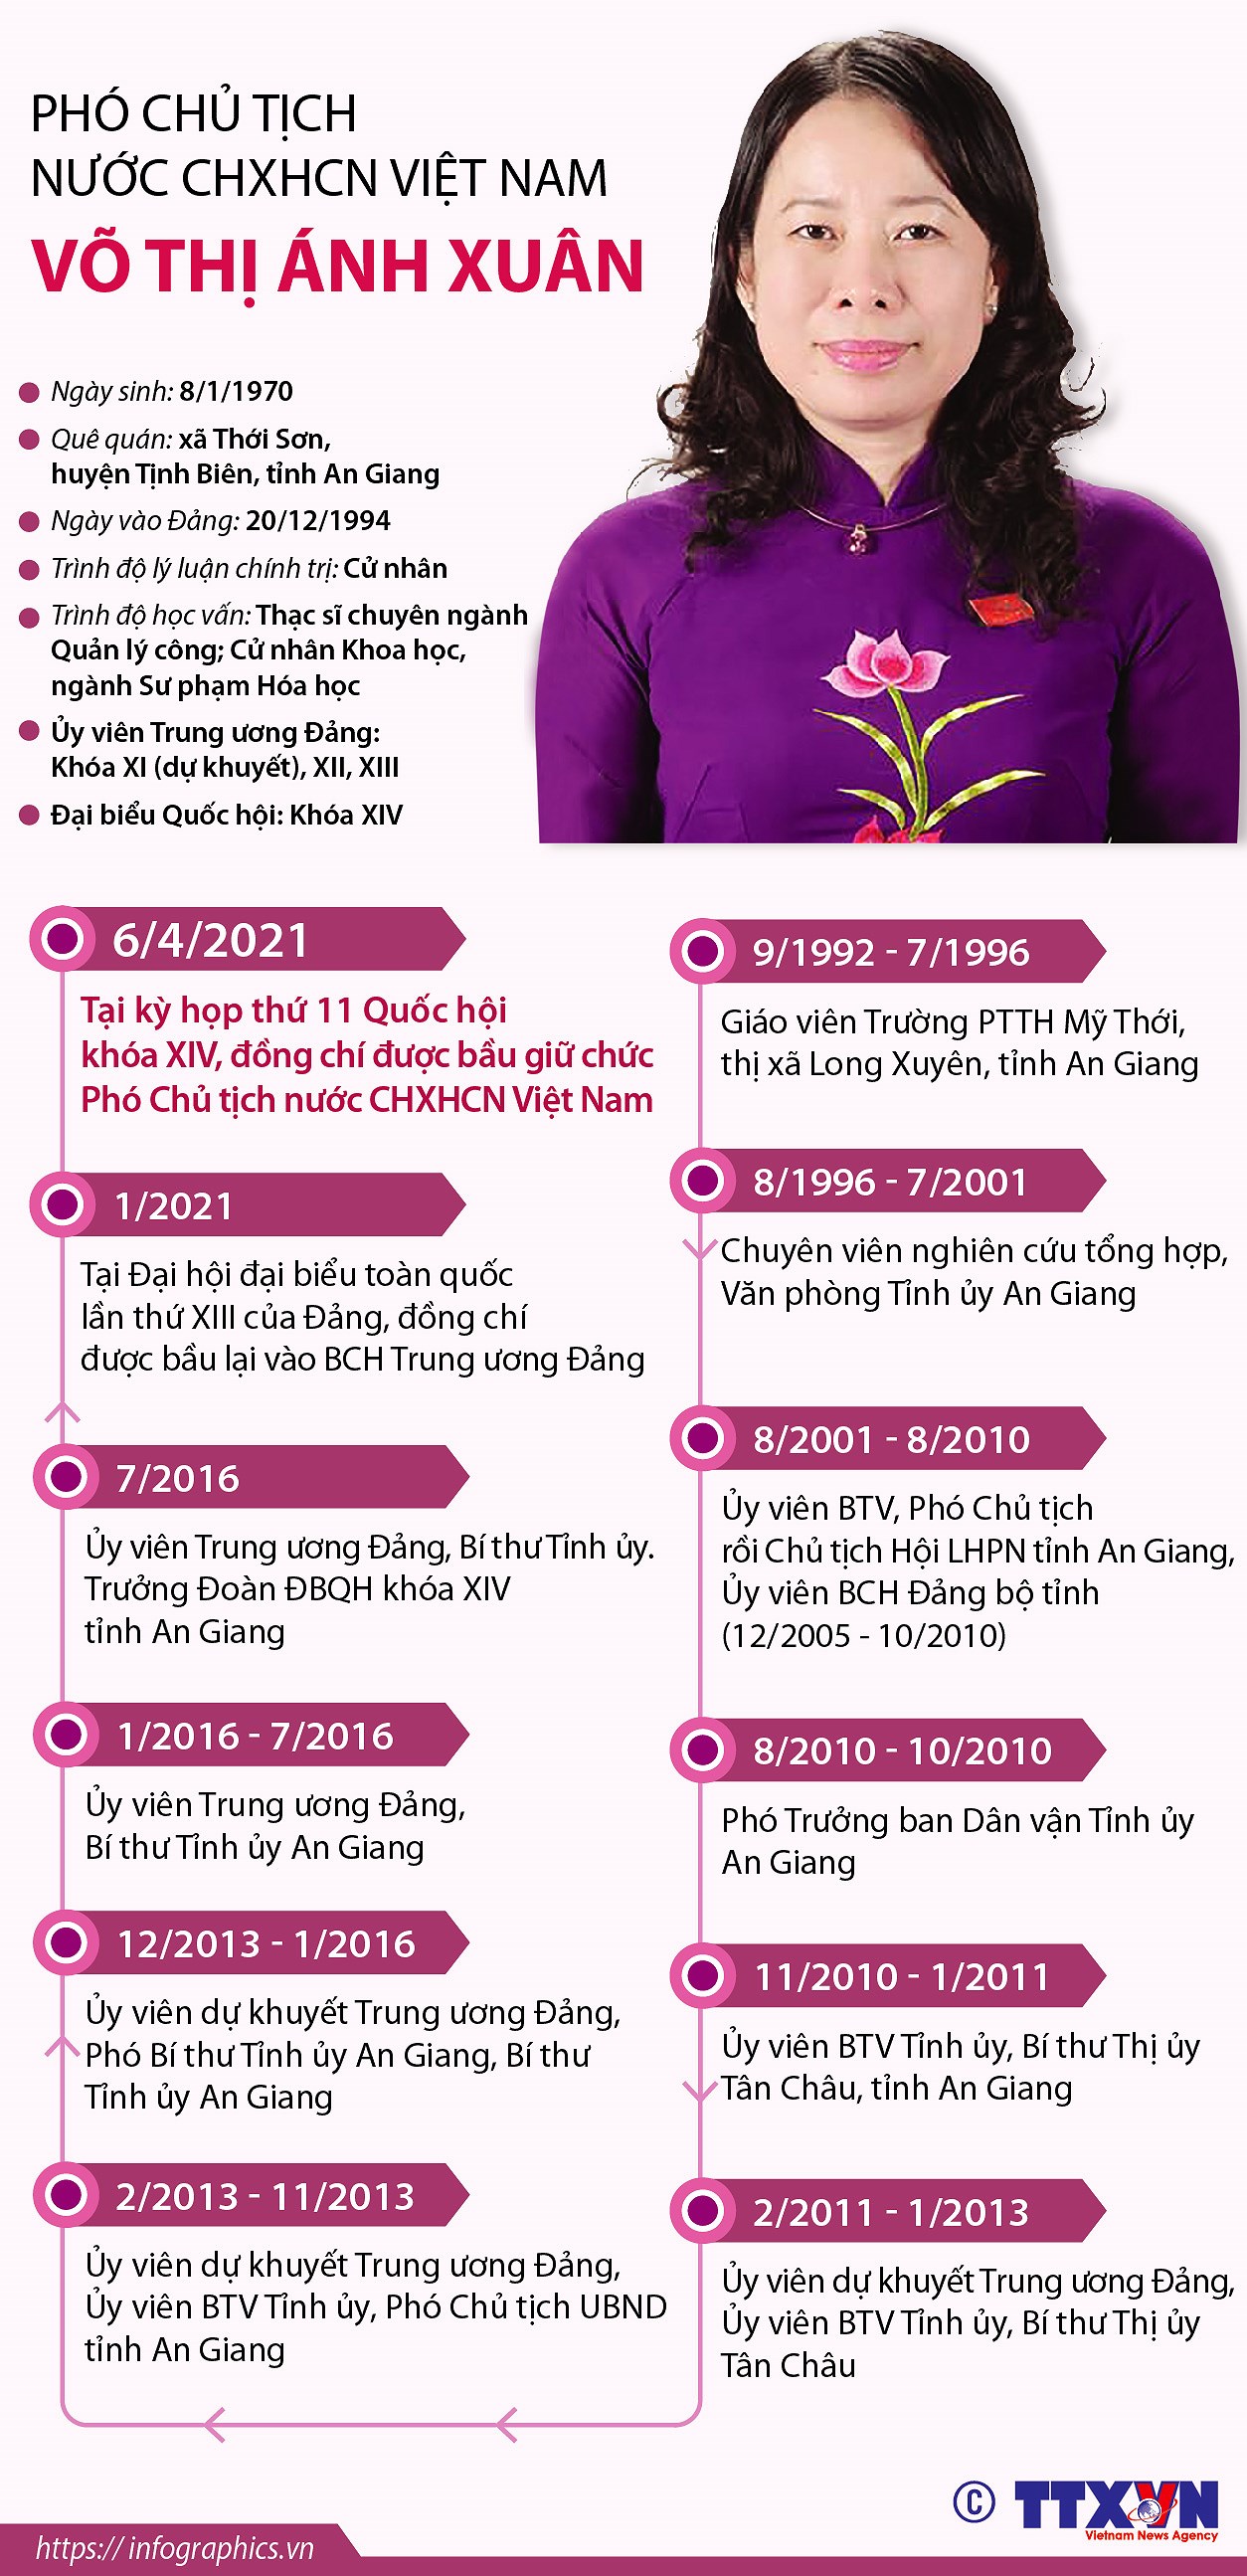 [Infographics] Pho Chu tich nuoc CHXHCN Viet Nam Vo Thi Anh Xuan hinh anh 1